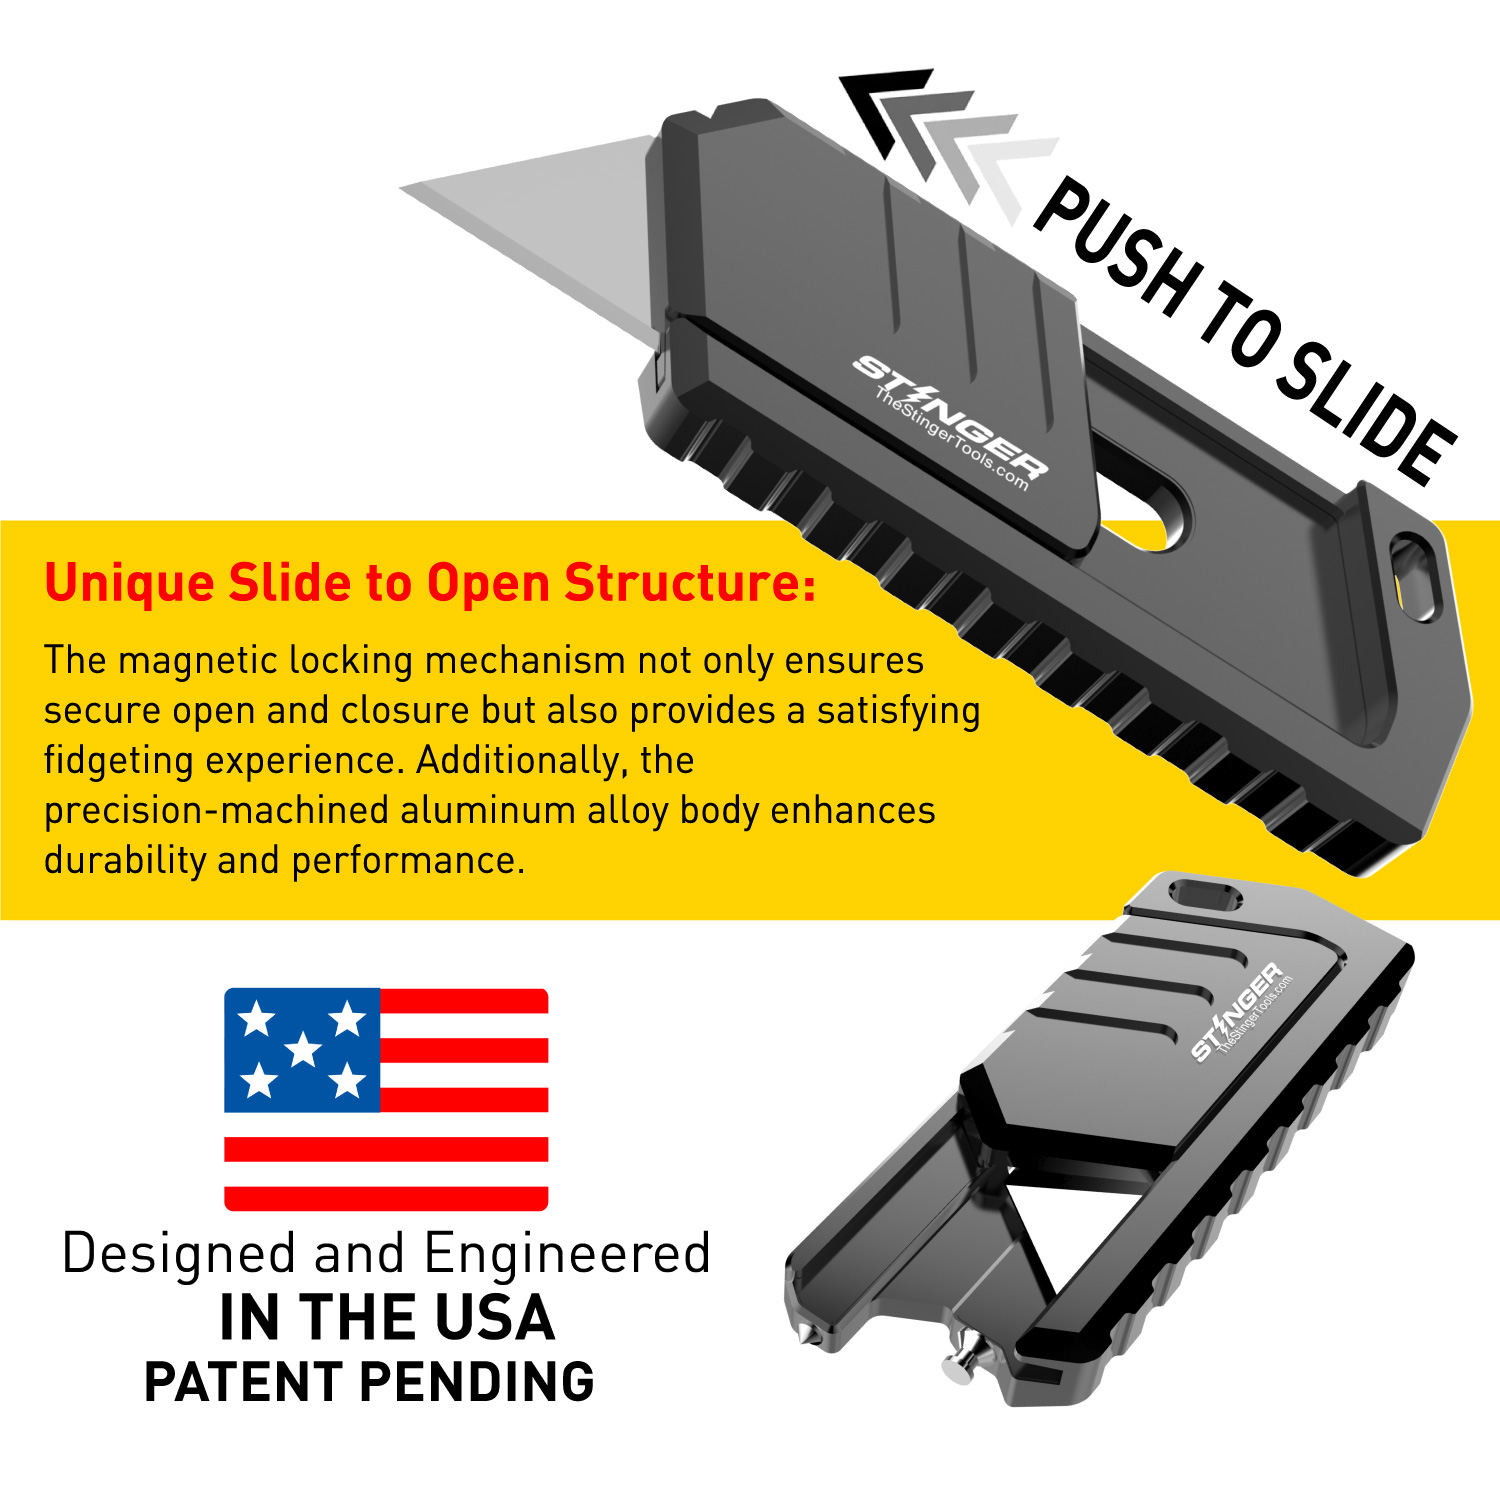 Stinger MagSlide Blade Utility Knife Glass Breaker, Original Design in USA